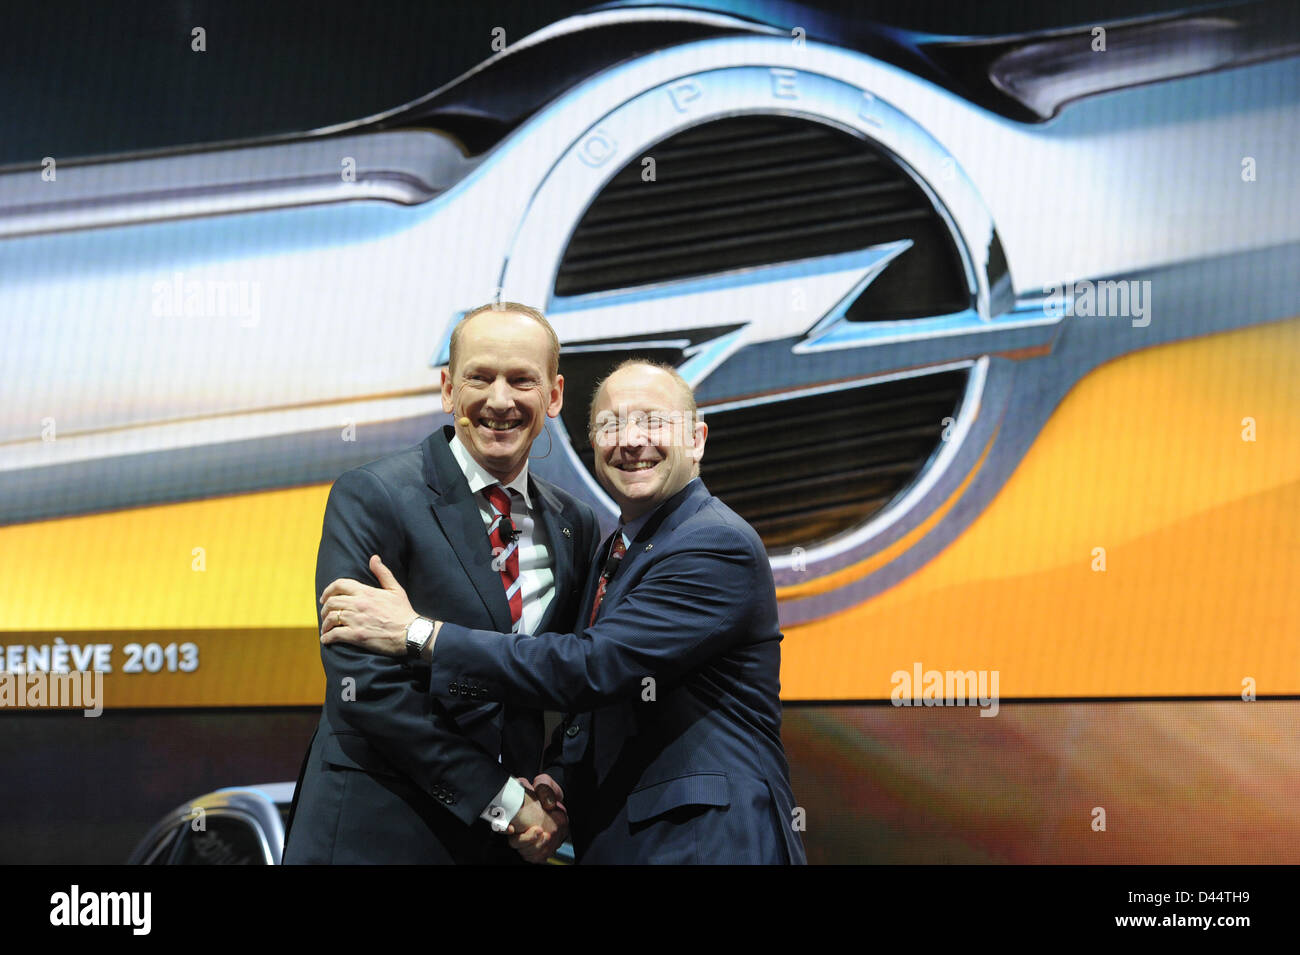 Président du conseil d'un constructeur automobile Opel, Karl-Thomas Neumann (L) sourit et serre la main avec le vice-président de General Motors (GM) à Detroit, Steve Girsky, au cours de la première journée de la presse au 83th Salon de Genève à Genève, Suisse, 5 mars 2013. Photo : Uli Deck Banque D'Images